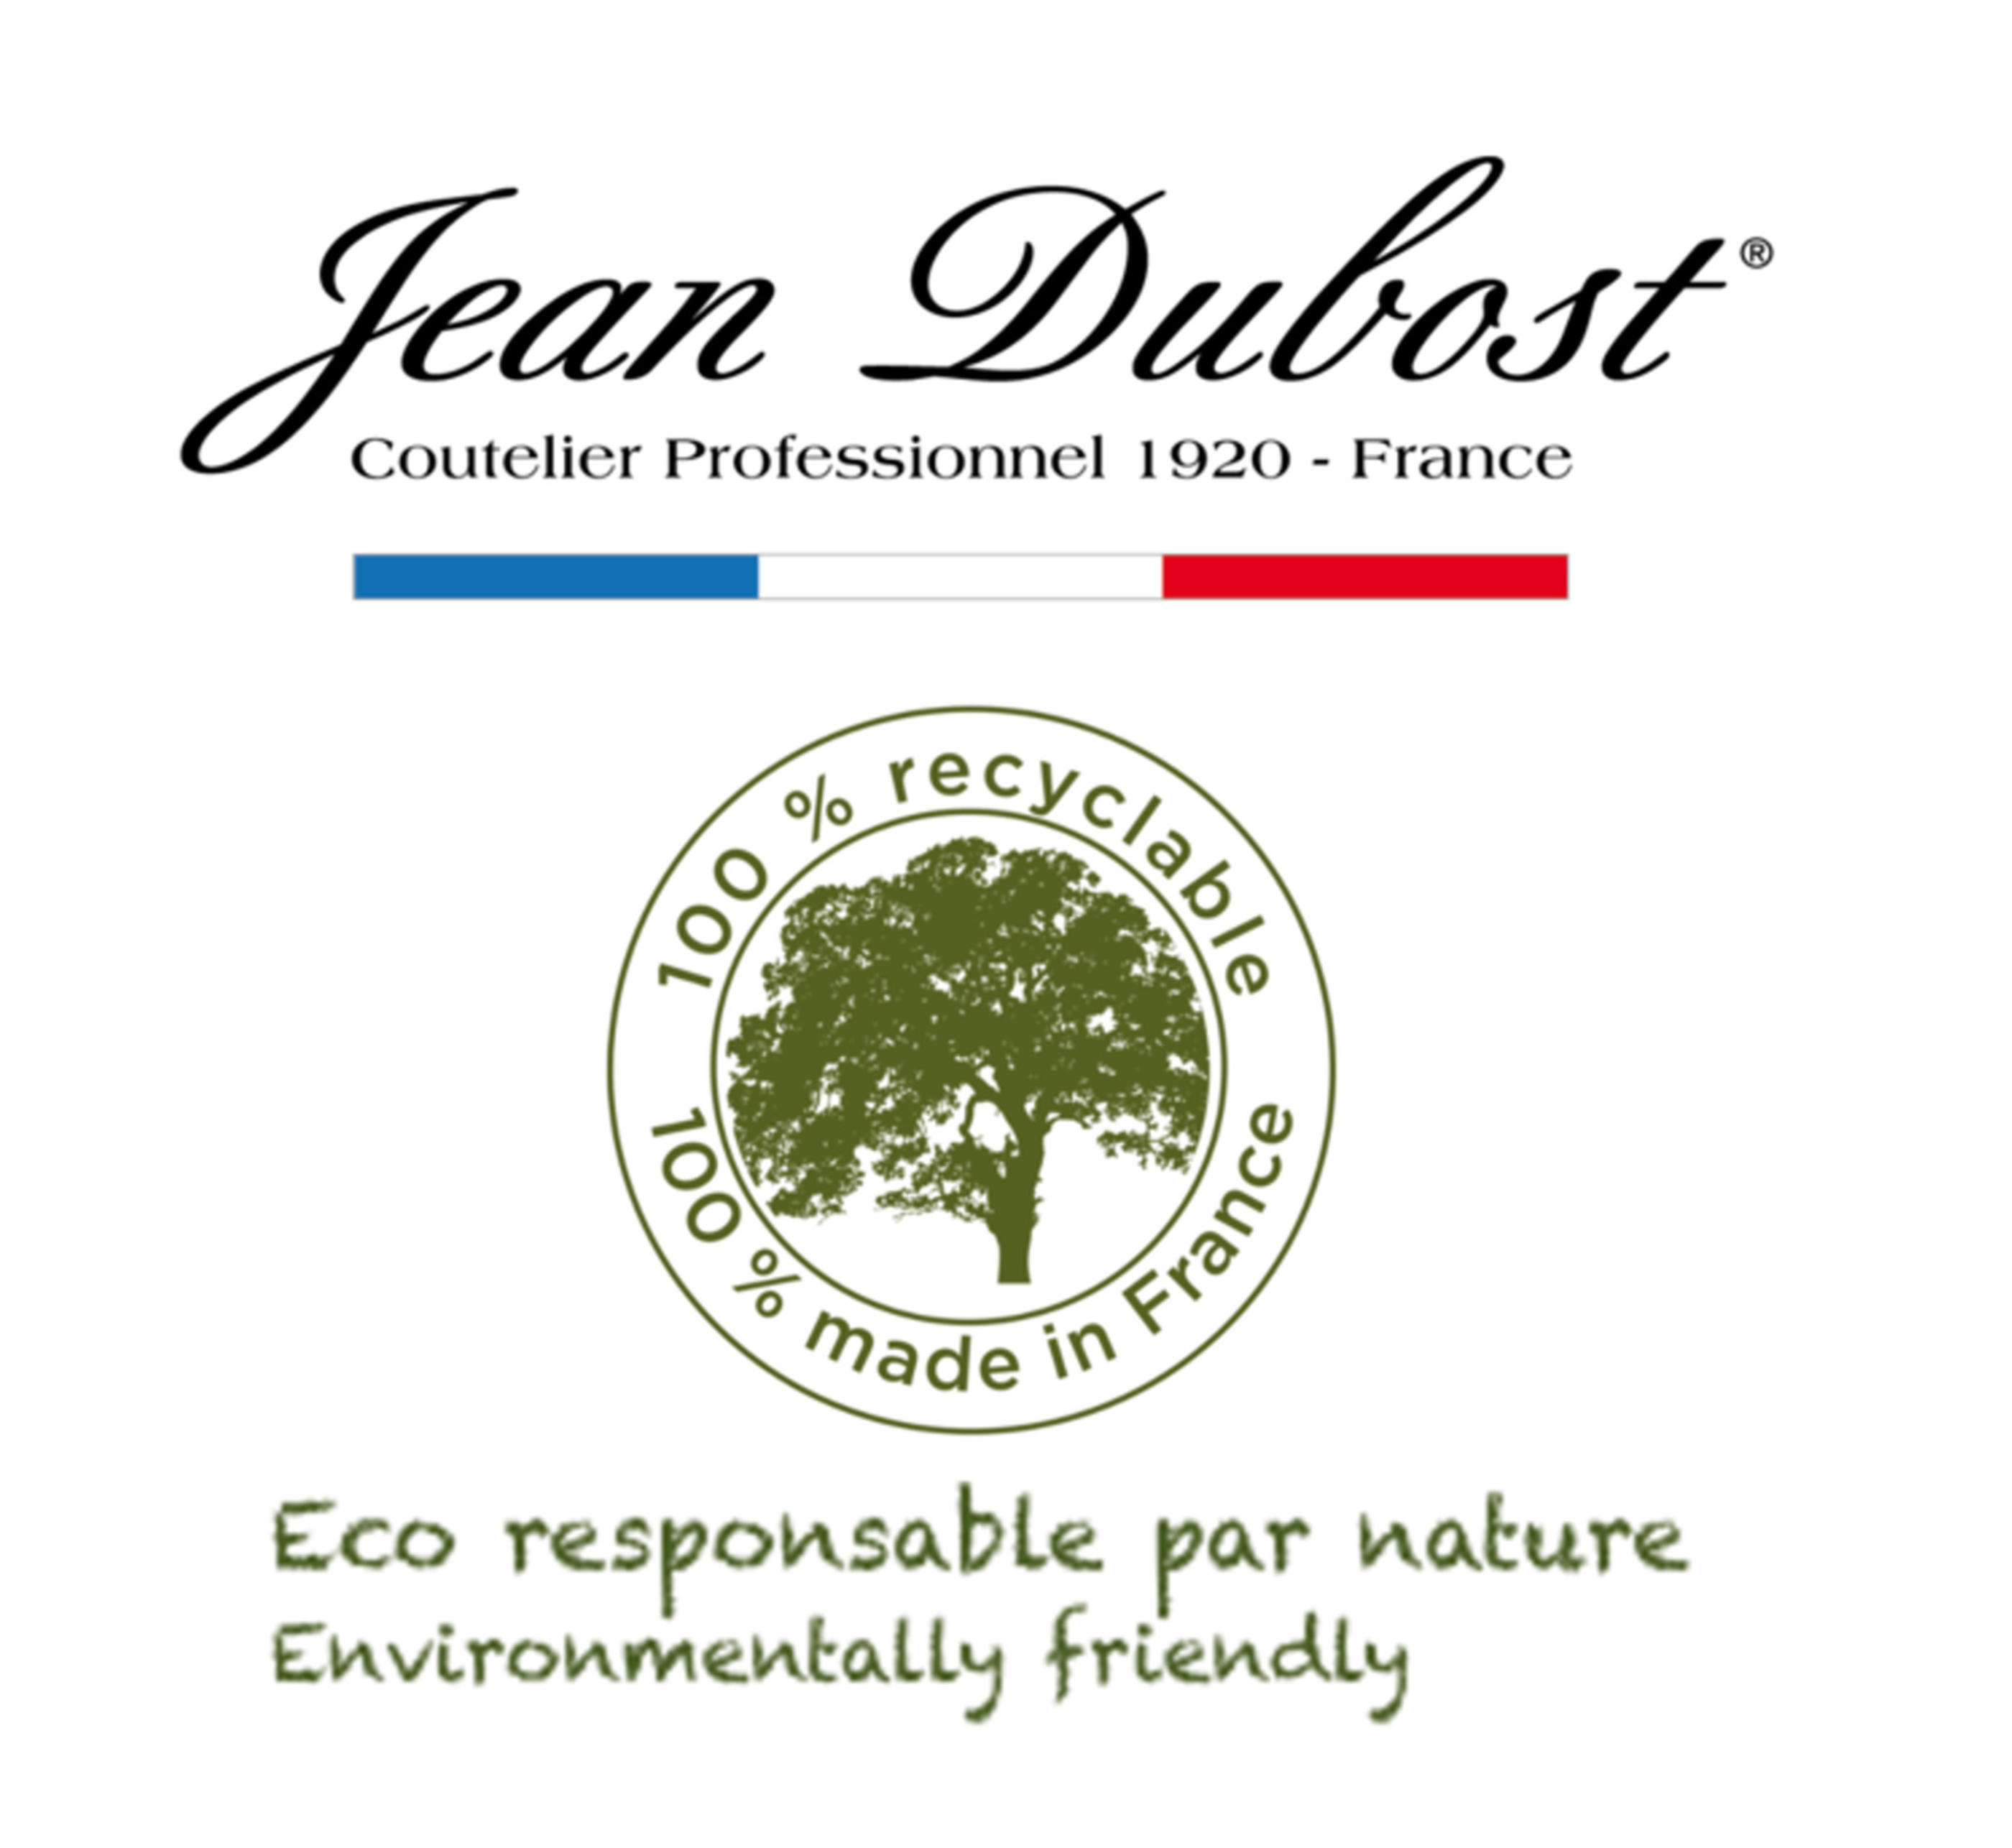 Jean Dubost récompensé pour ses gammes ecoresponsables, Tableware International, Juillet 2018